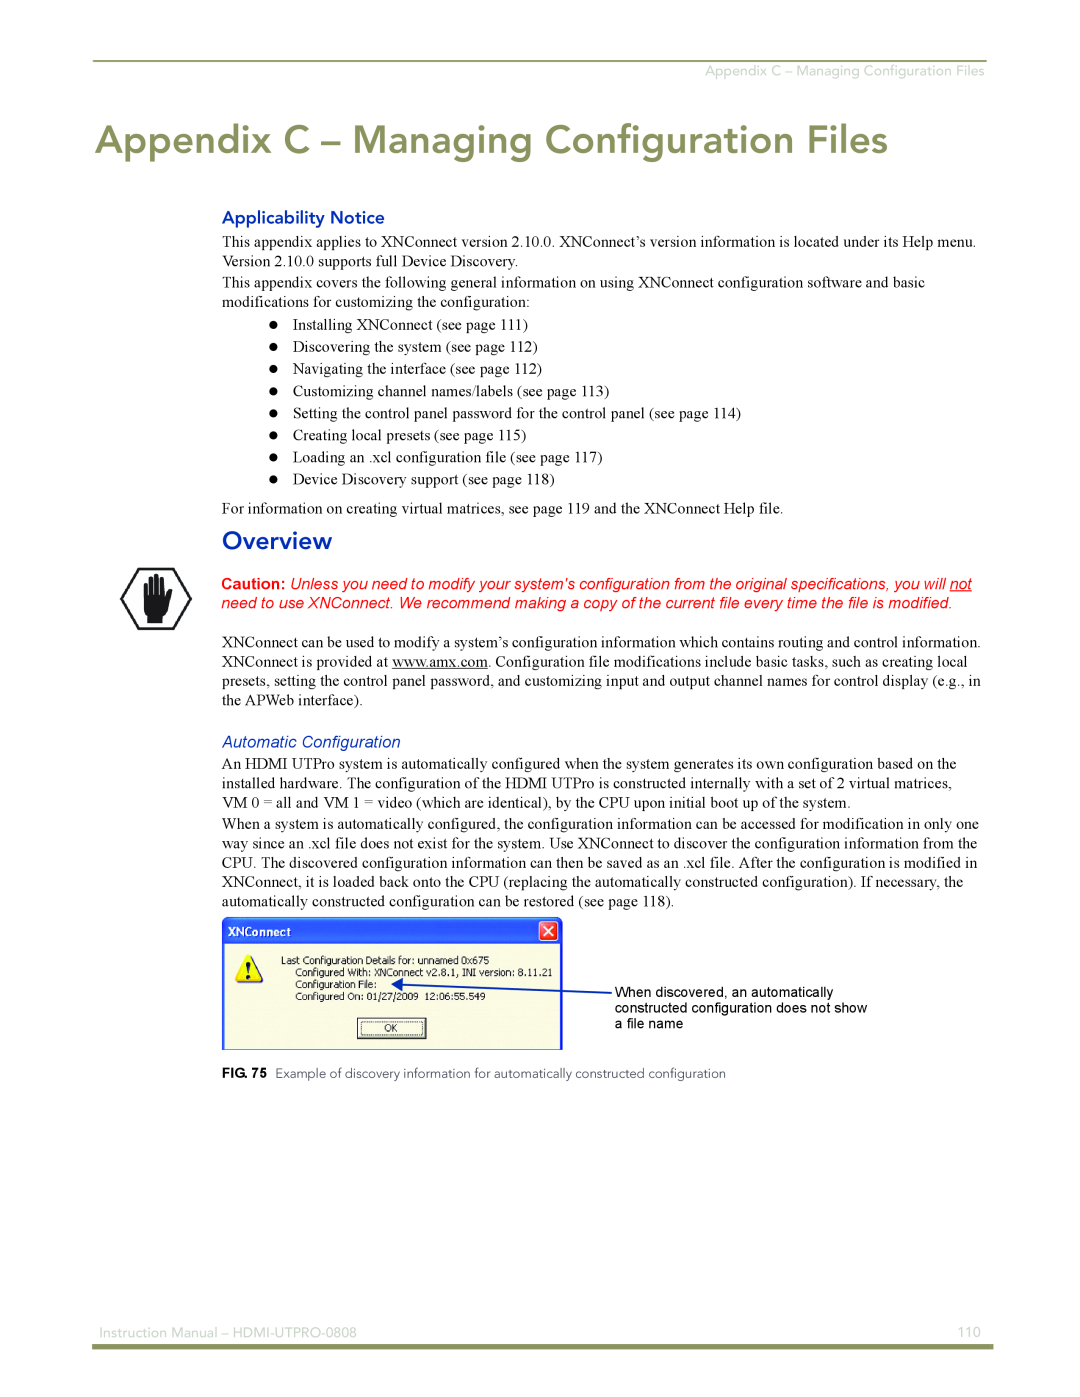 AMX HDMI-UTPRO-0808 Appendix C – Managing Configuration Files, Overview, Applicability Notice, Automatic Configuration 